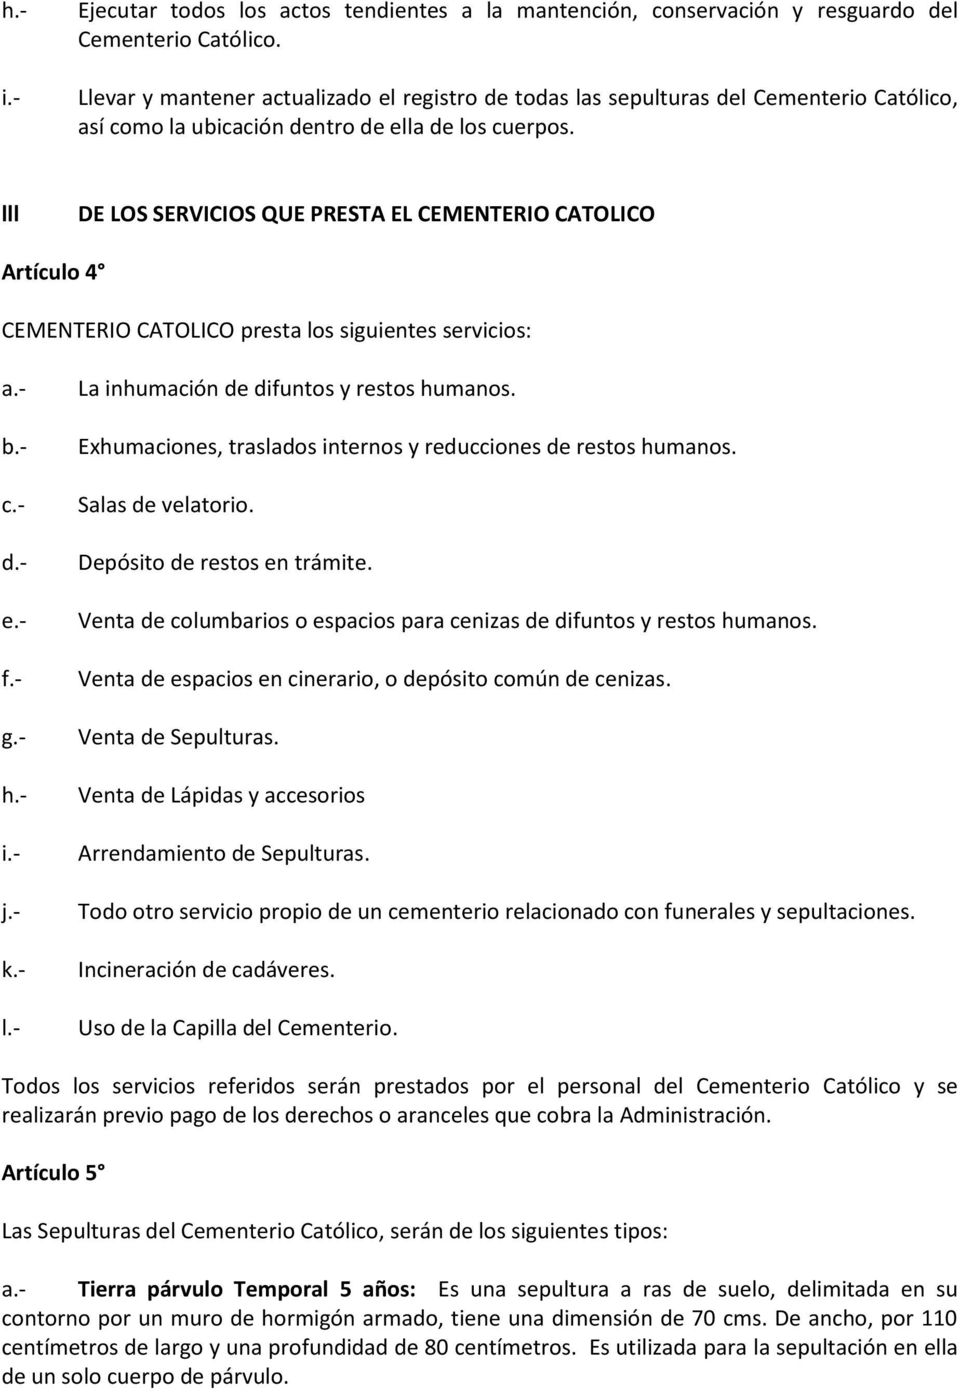 lll DE LOS SERVICIOS QUE PRESTA EL CEMENTERIO CATOLICO Artículo 4 CEMENTERIO CATOLICO presta los siguientes servicios: a.- b.- c.- d.- e.- f.- g.- h.- i.- j.- k.- l.